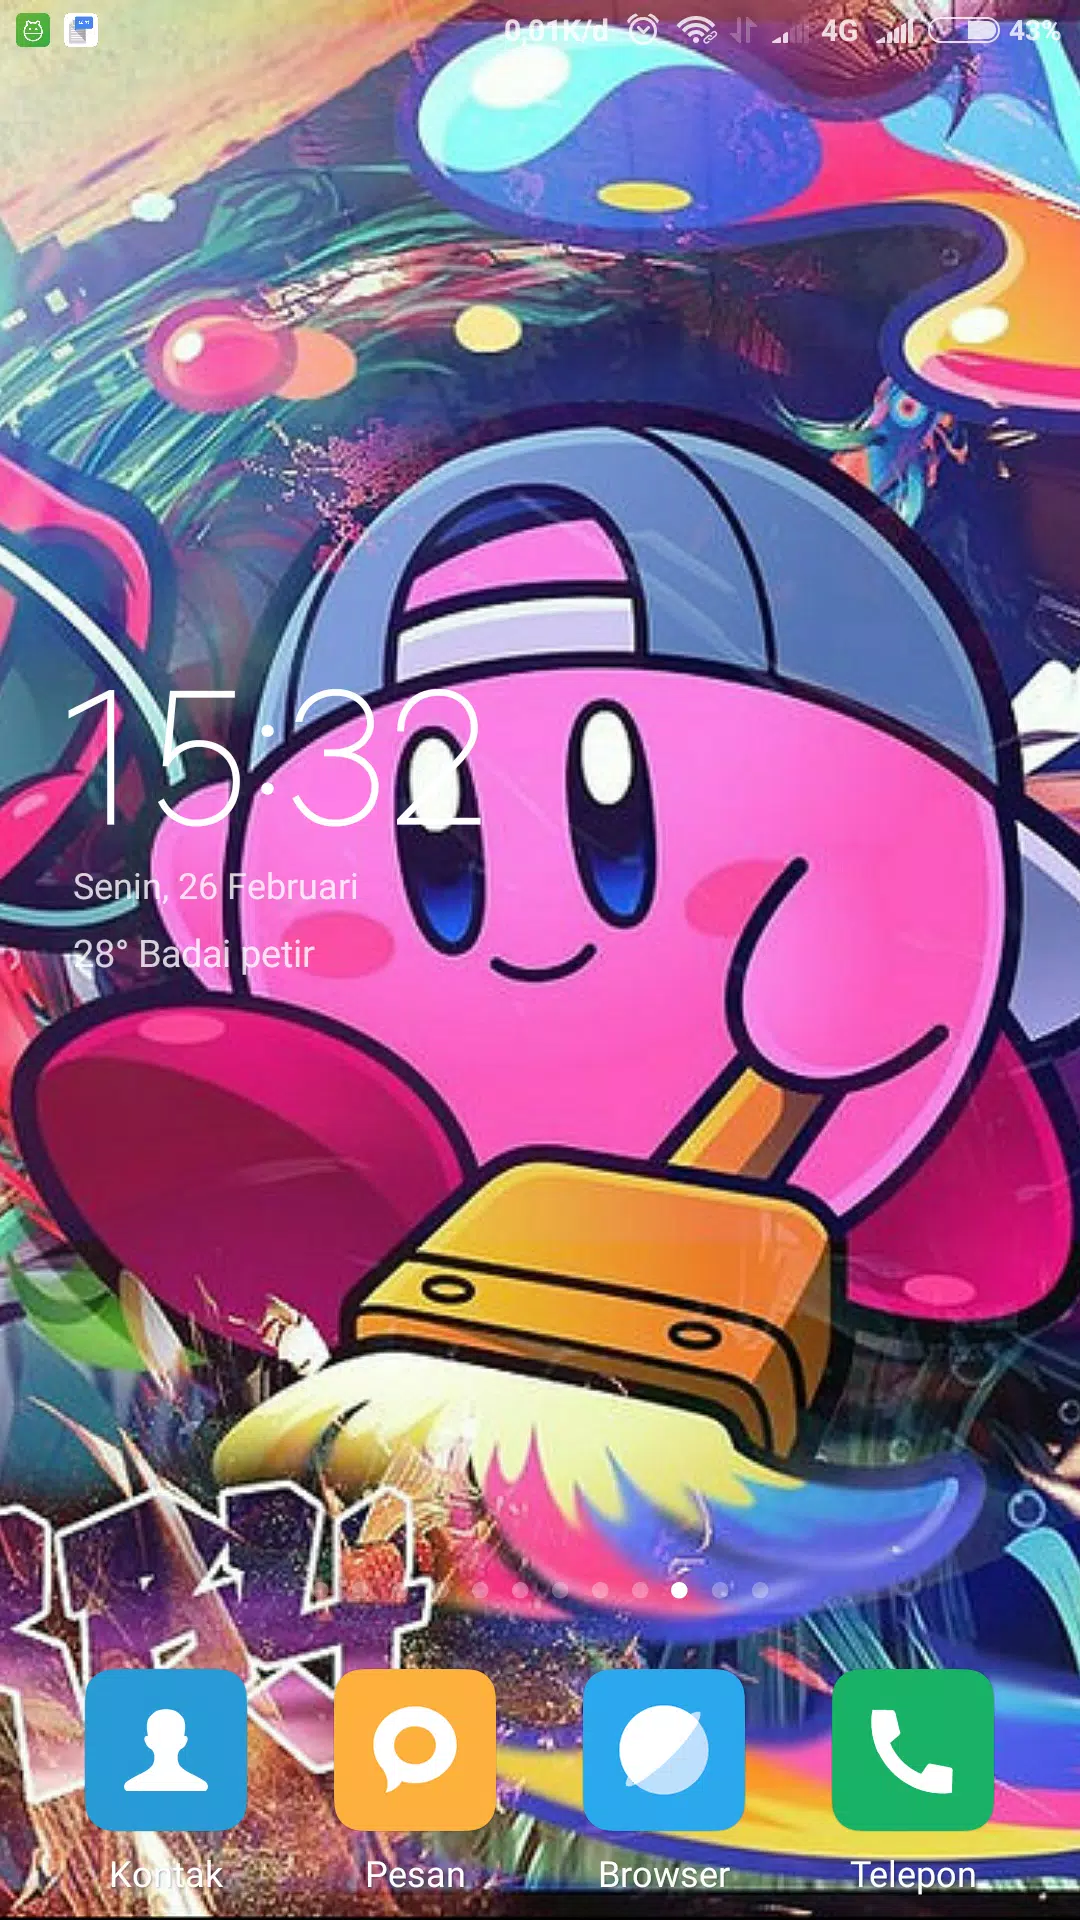 Tải xuống APK Kirby Wallpaper cho Android và có một góc riêng của riêng bạn trên thiết bị của bạn. Với thế giới đầy màu sắc của Kirby, bạn có thể khám phá thế giới đầy sắc màu của riêng bạn và tạo nên trải nghiệm độc đáo. Hãy thưởng thức hình nền Kirby cho Android và trải nghiệm những cung bậc cảm xúc tuyệt vời!